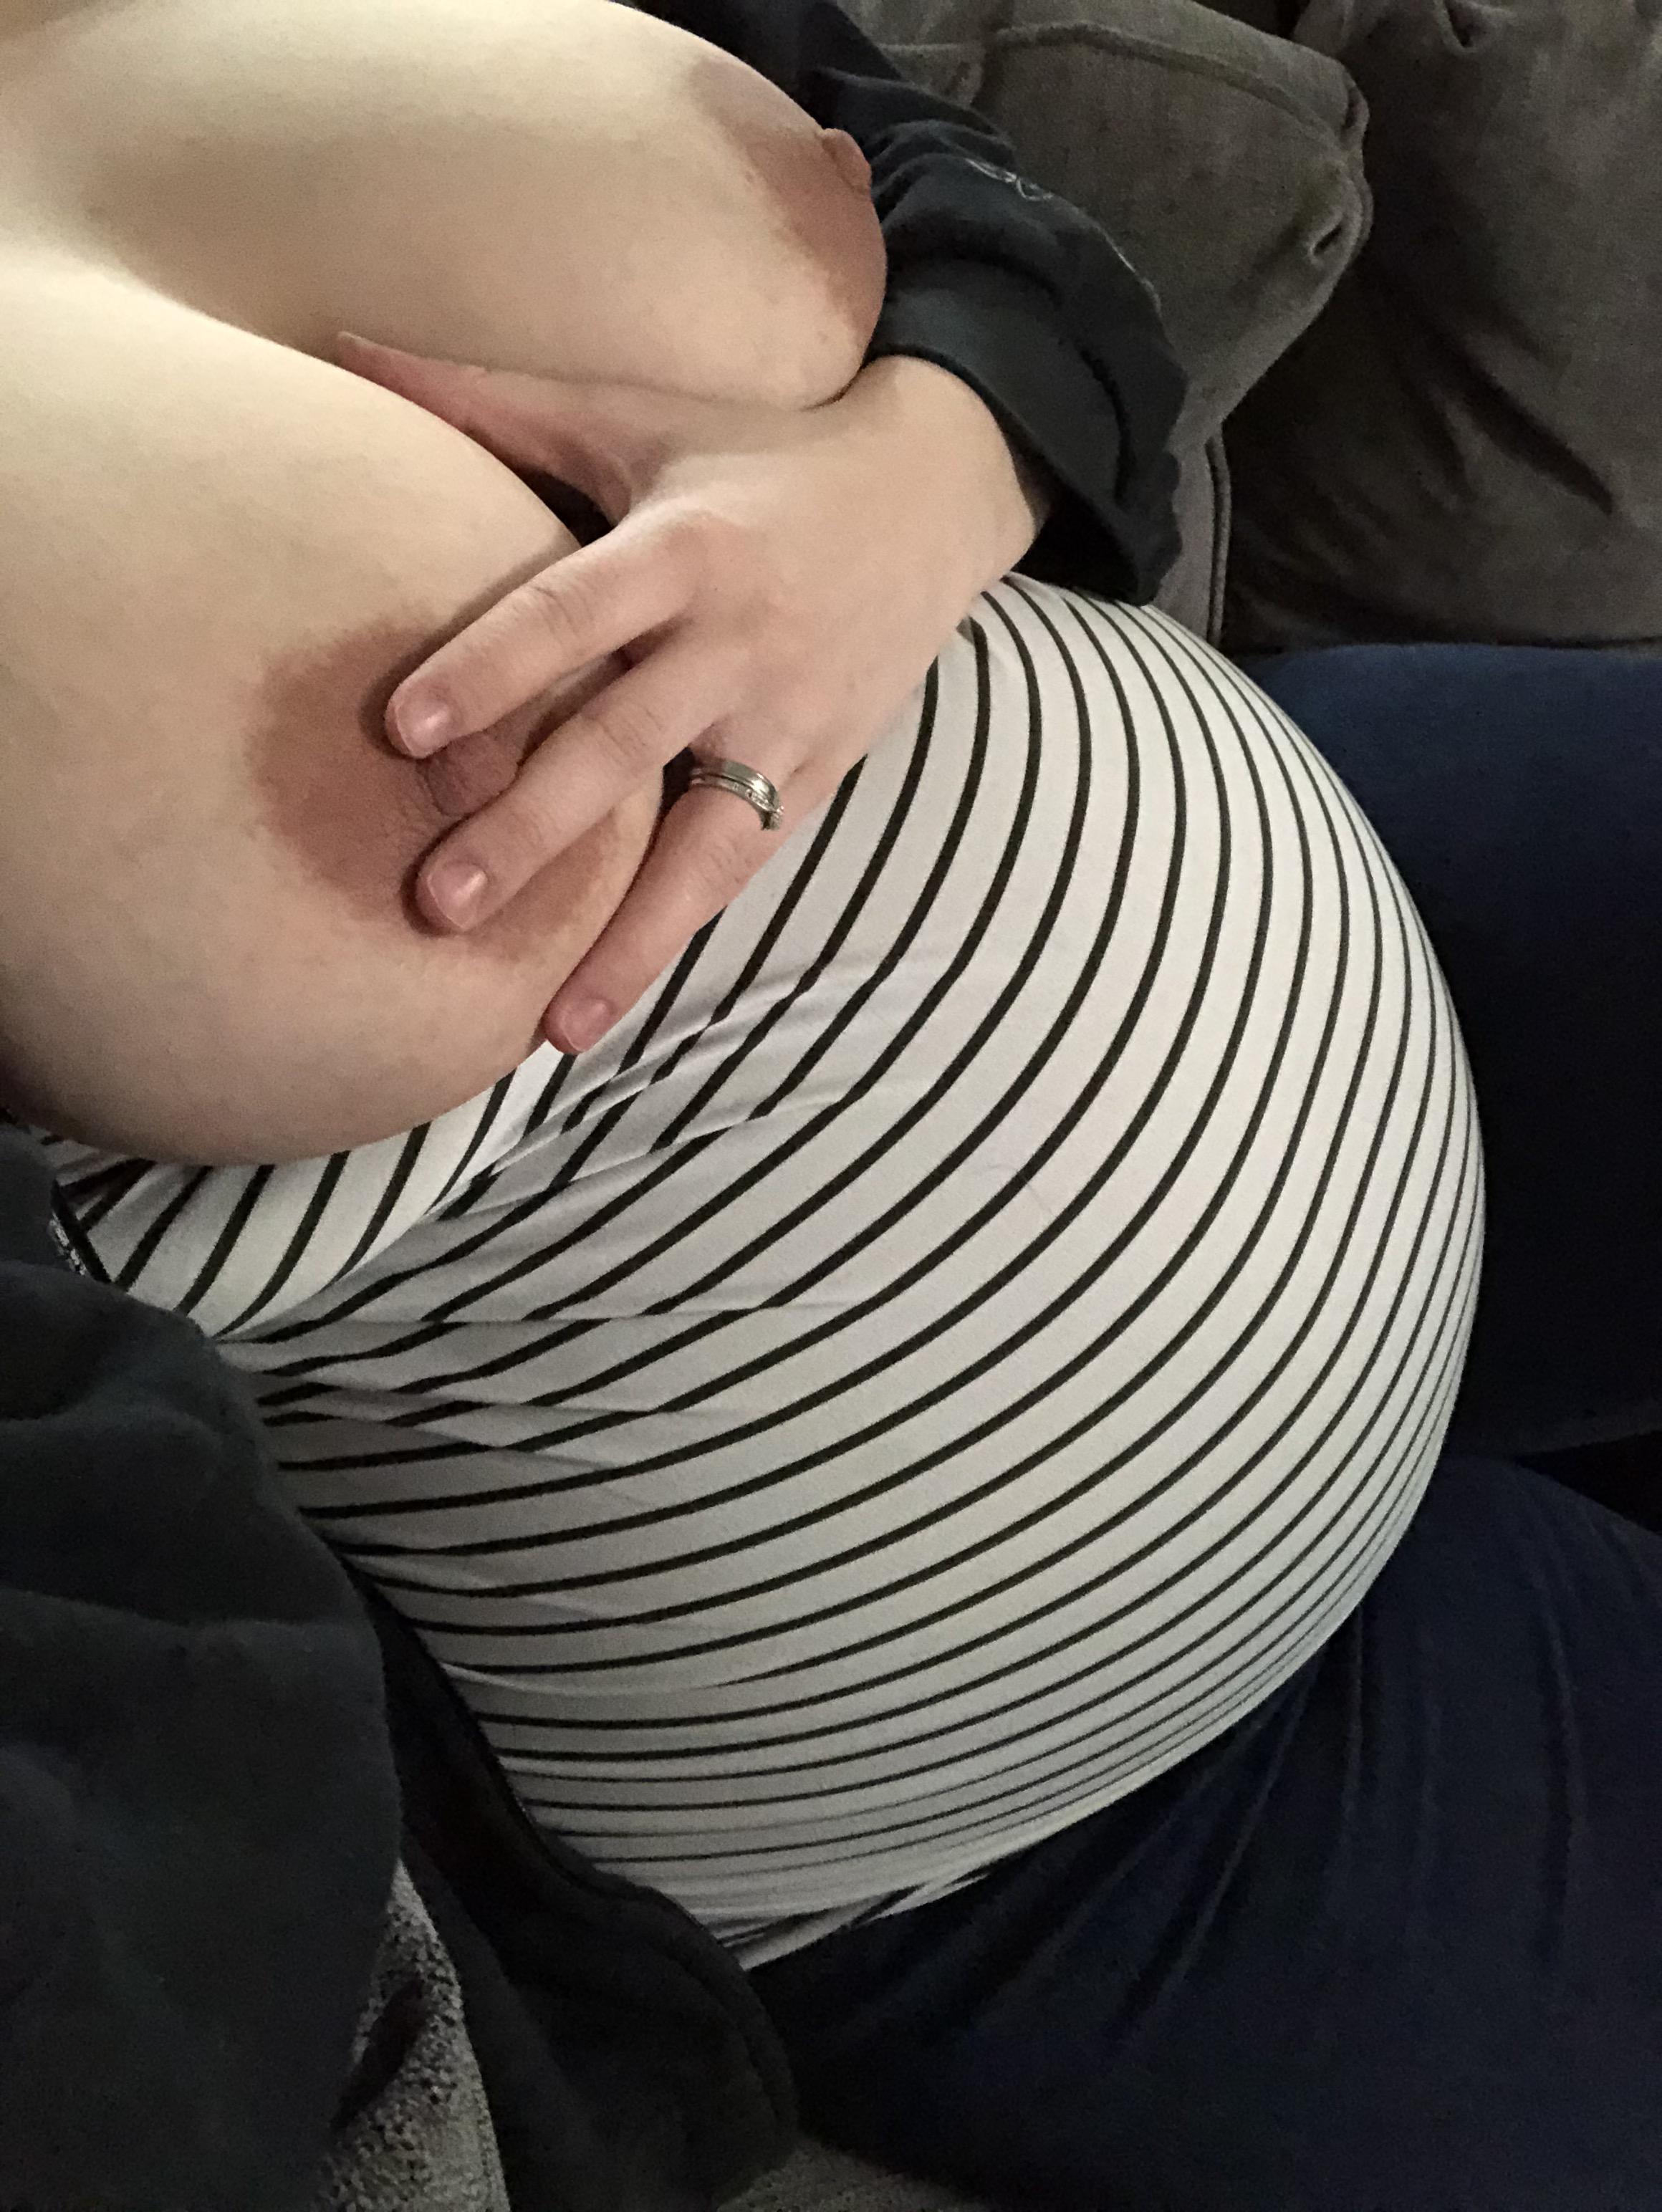 Swollen Pregnant Tits - Someone come suck on my swollen pregnant tits.